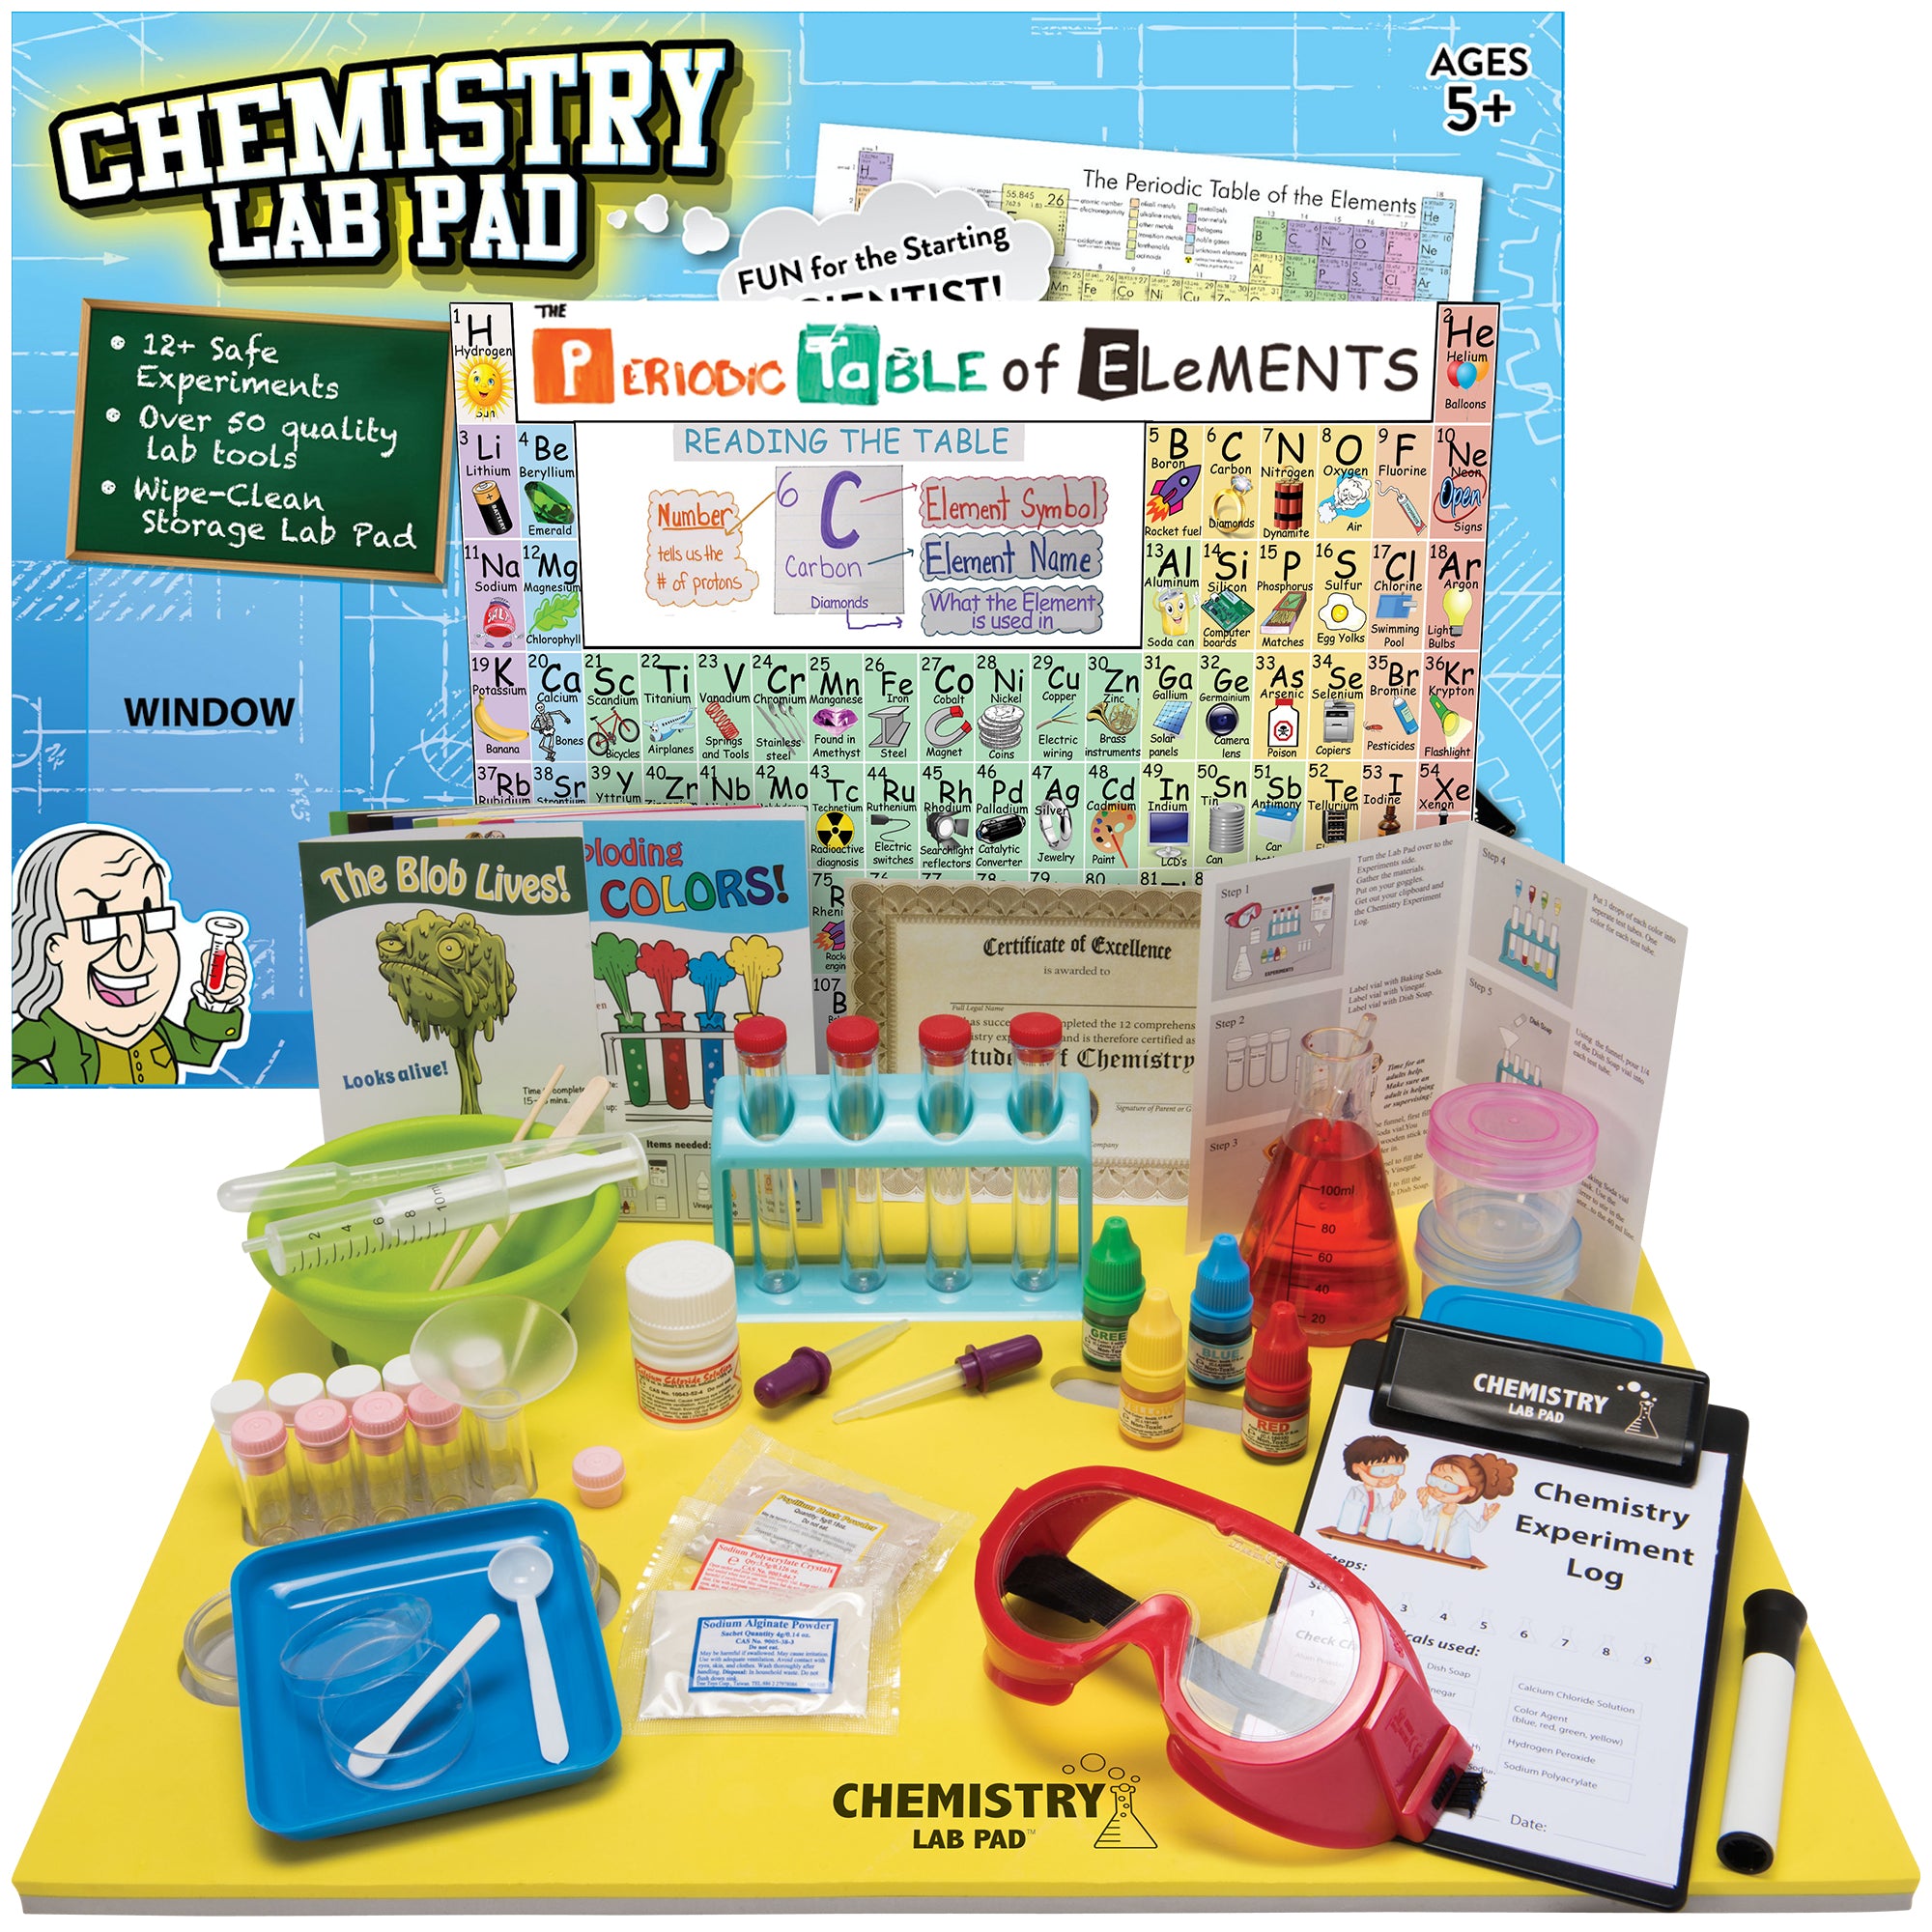 chemistry science kit